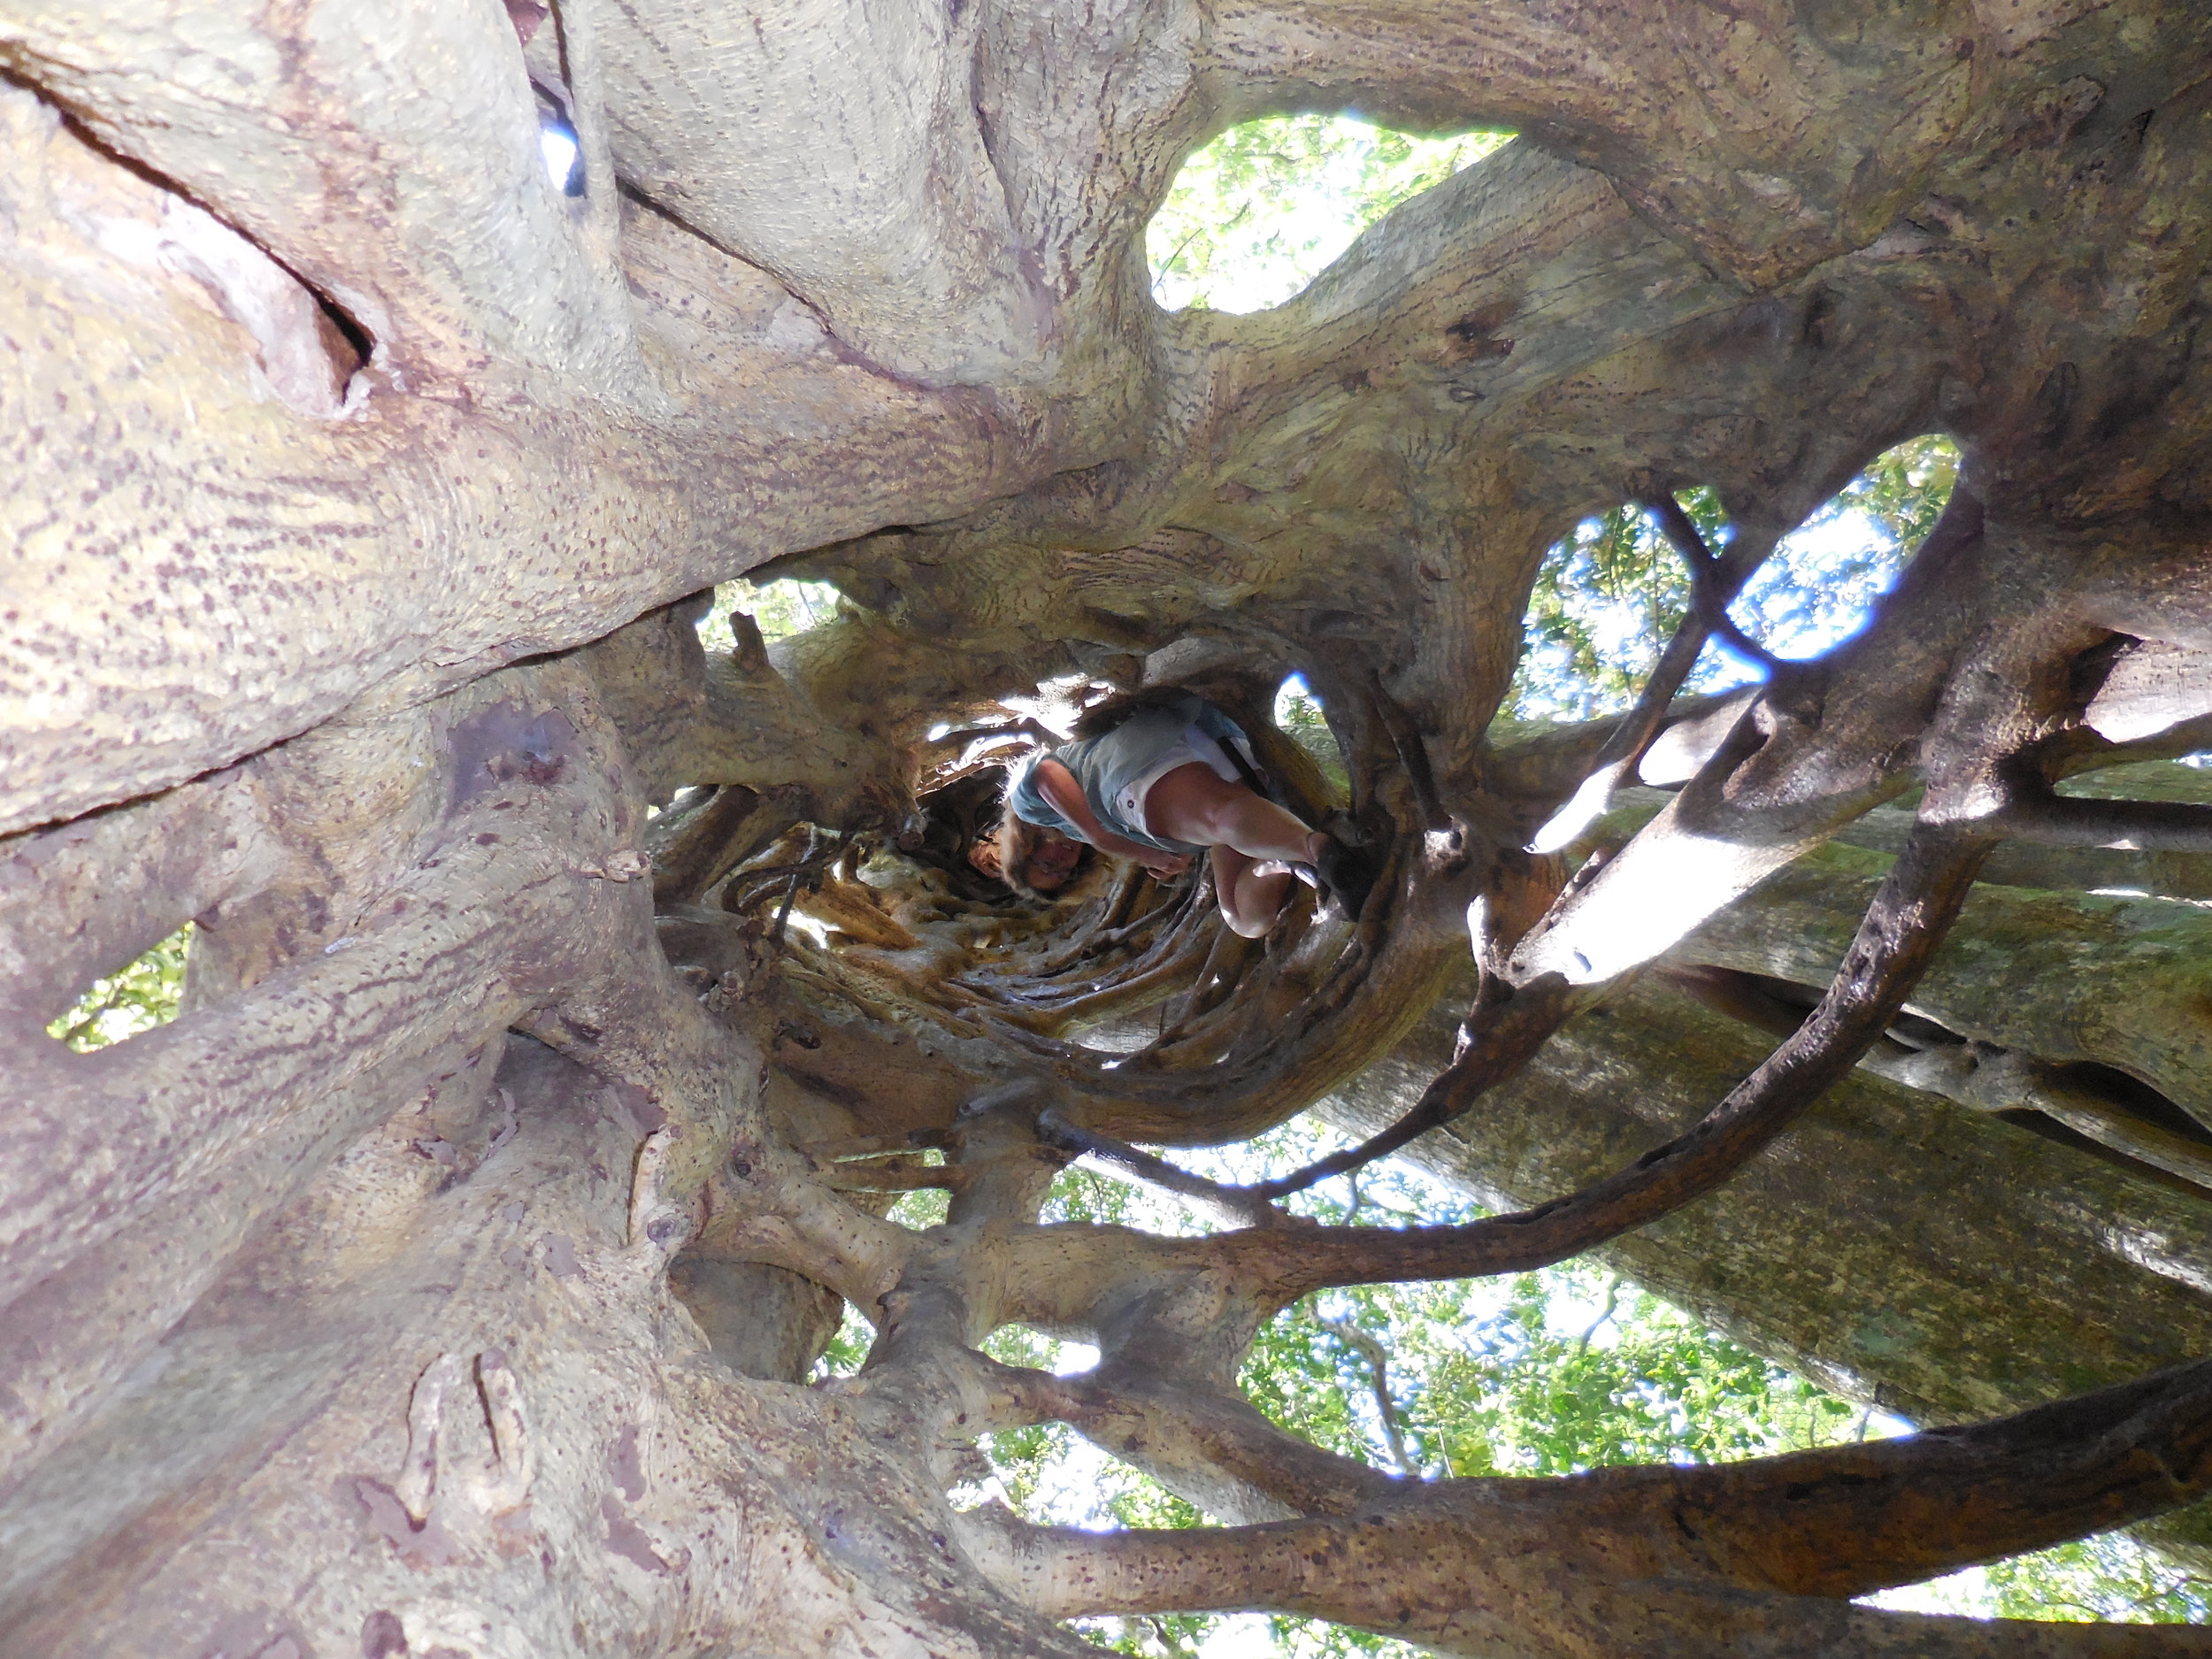 Inside hollow tree